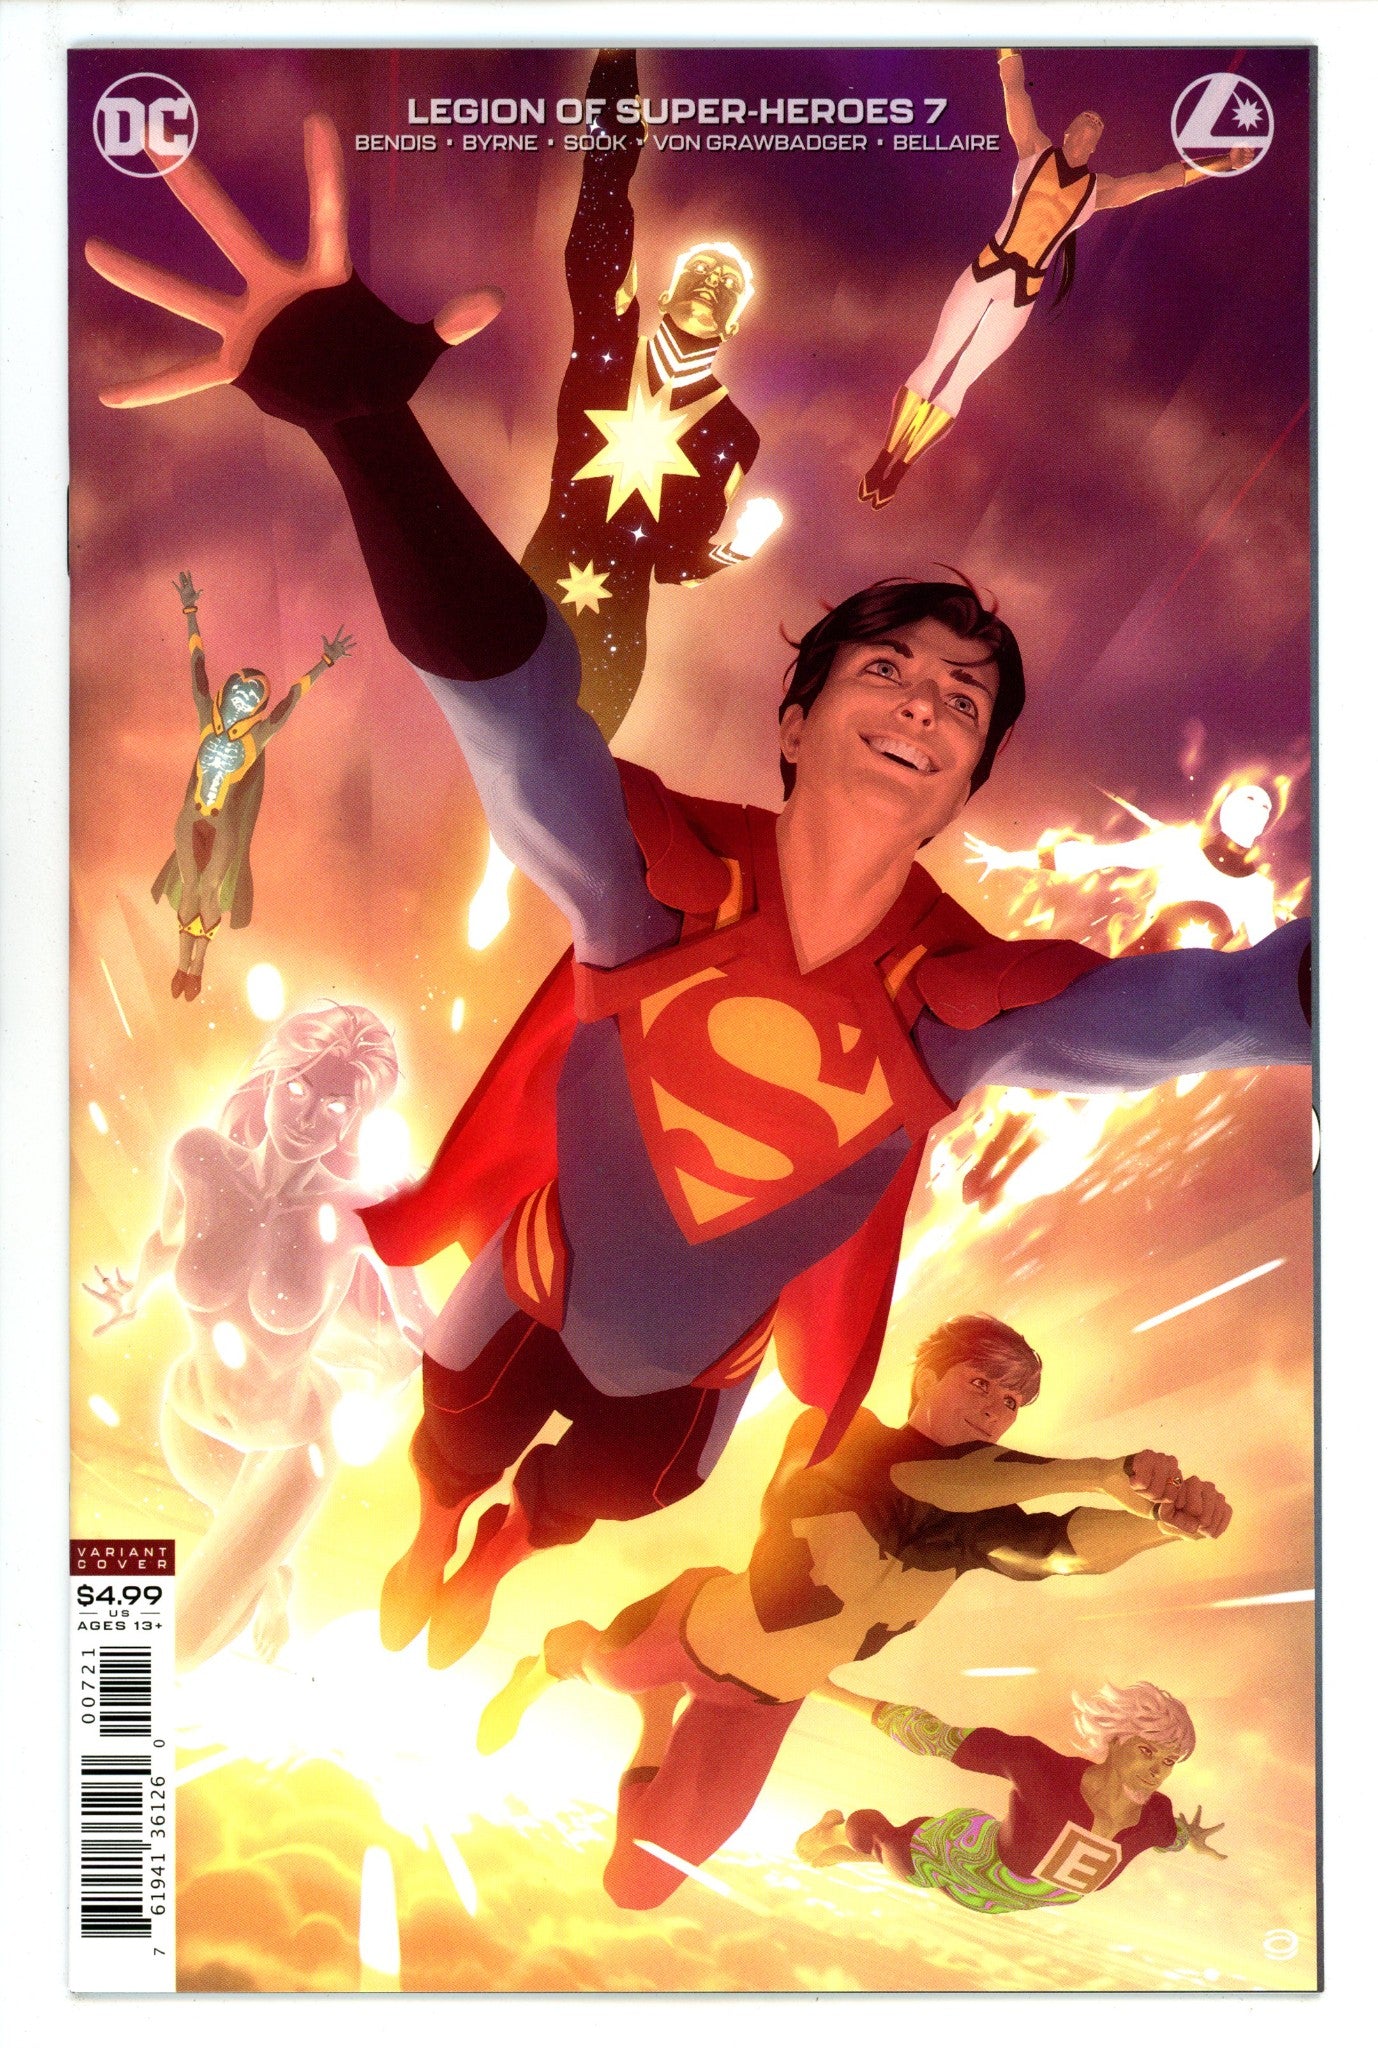 Legion of Super-Heroes Vol 8 7 High Grade (2020) Garner Variant 